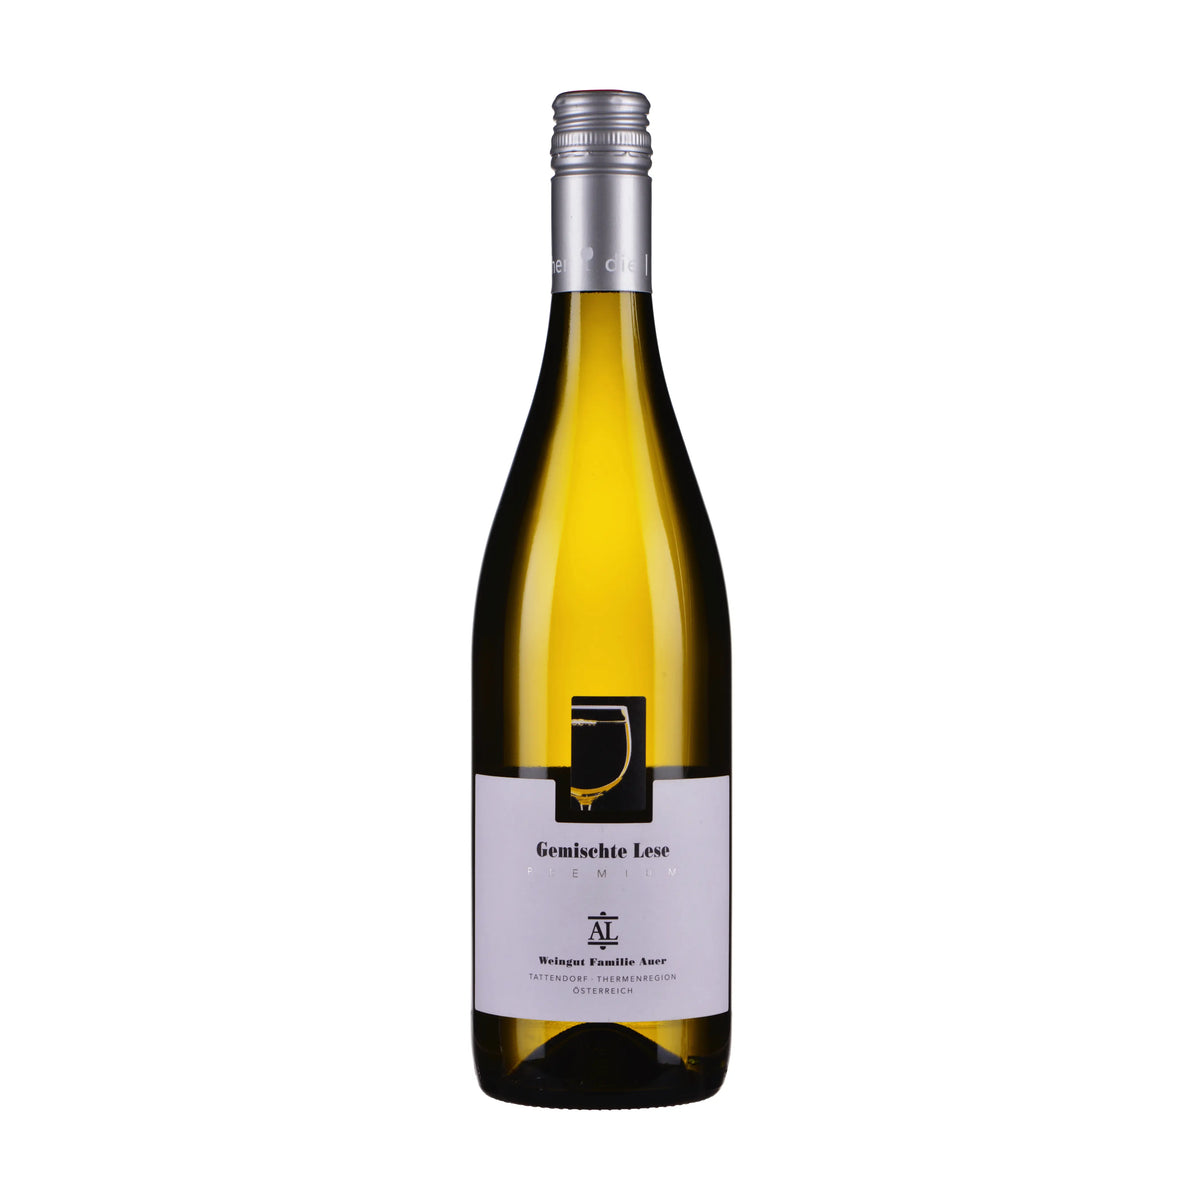 Weingut Familie Auer-Weißwein-Cuvée Weißwein-Österreich-Thermenregion-2021 Gemischte Lese Premium - Bio-WINECOM